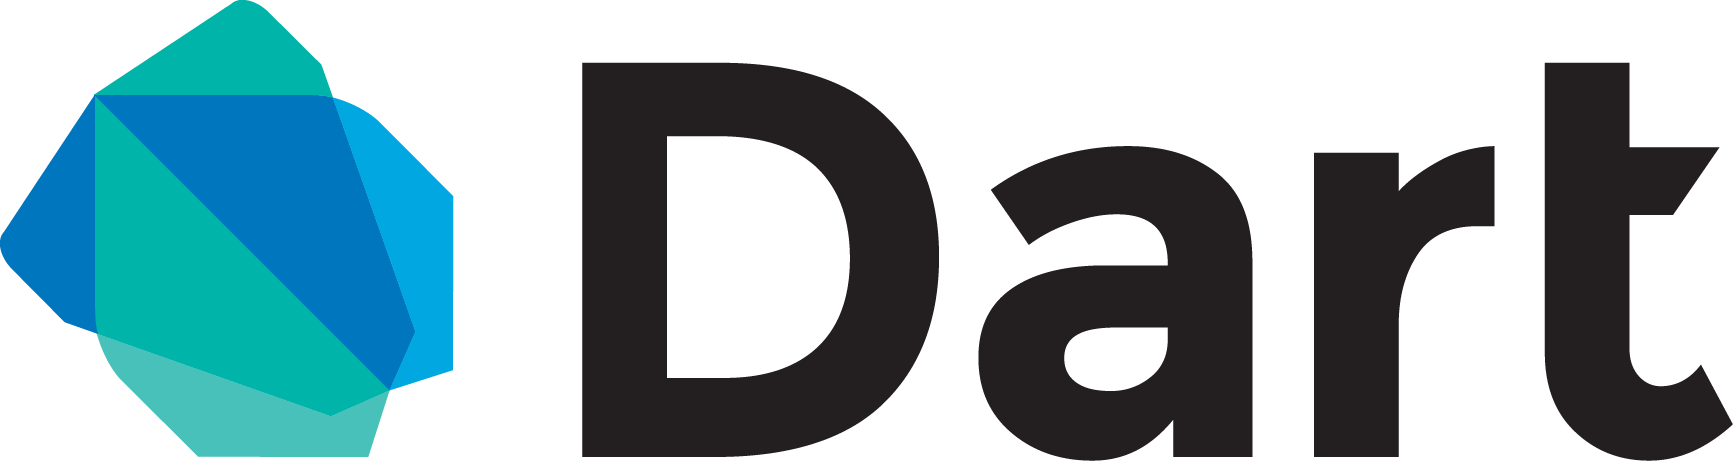 dart-logo-wordmark.png